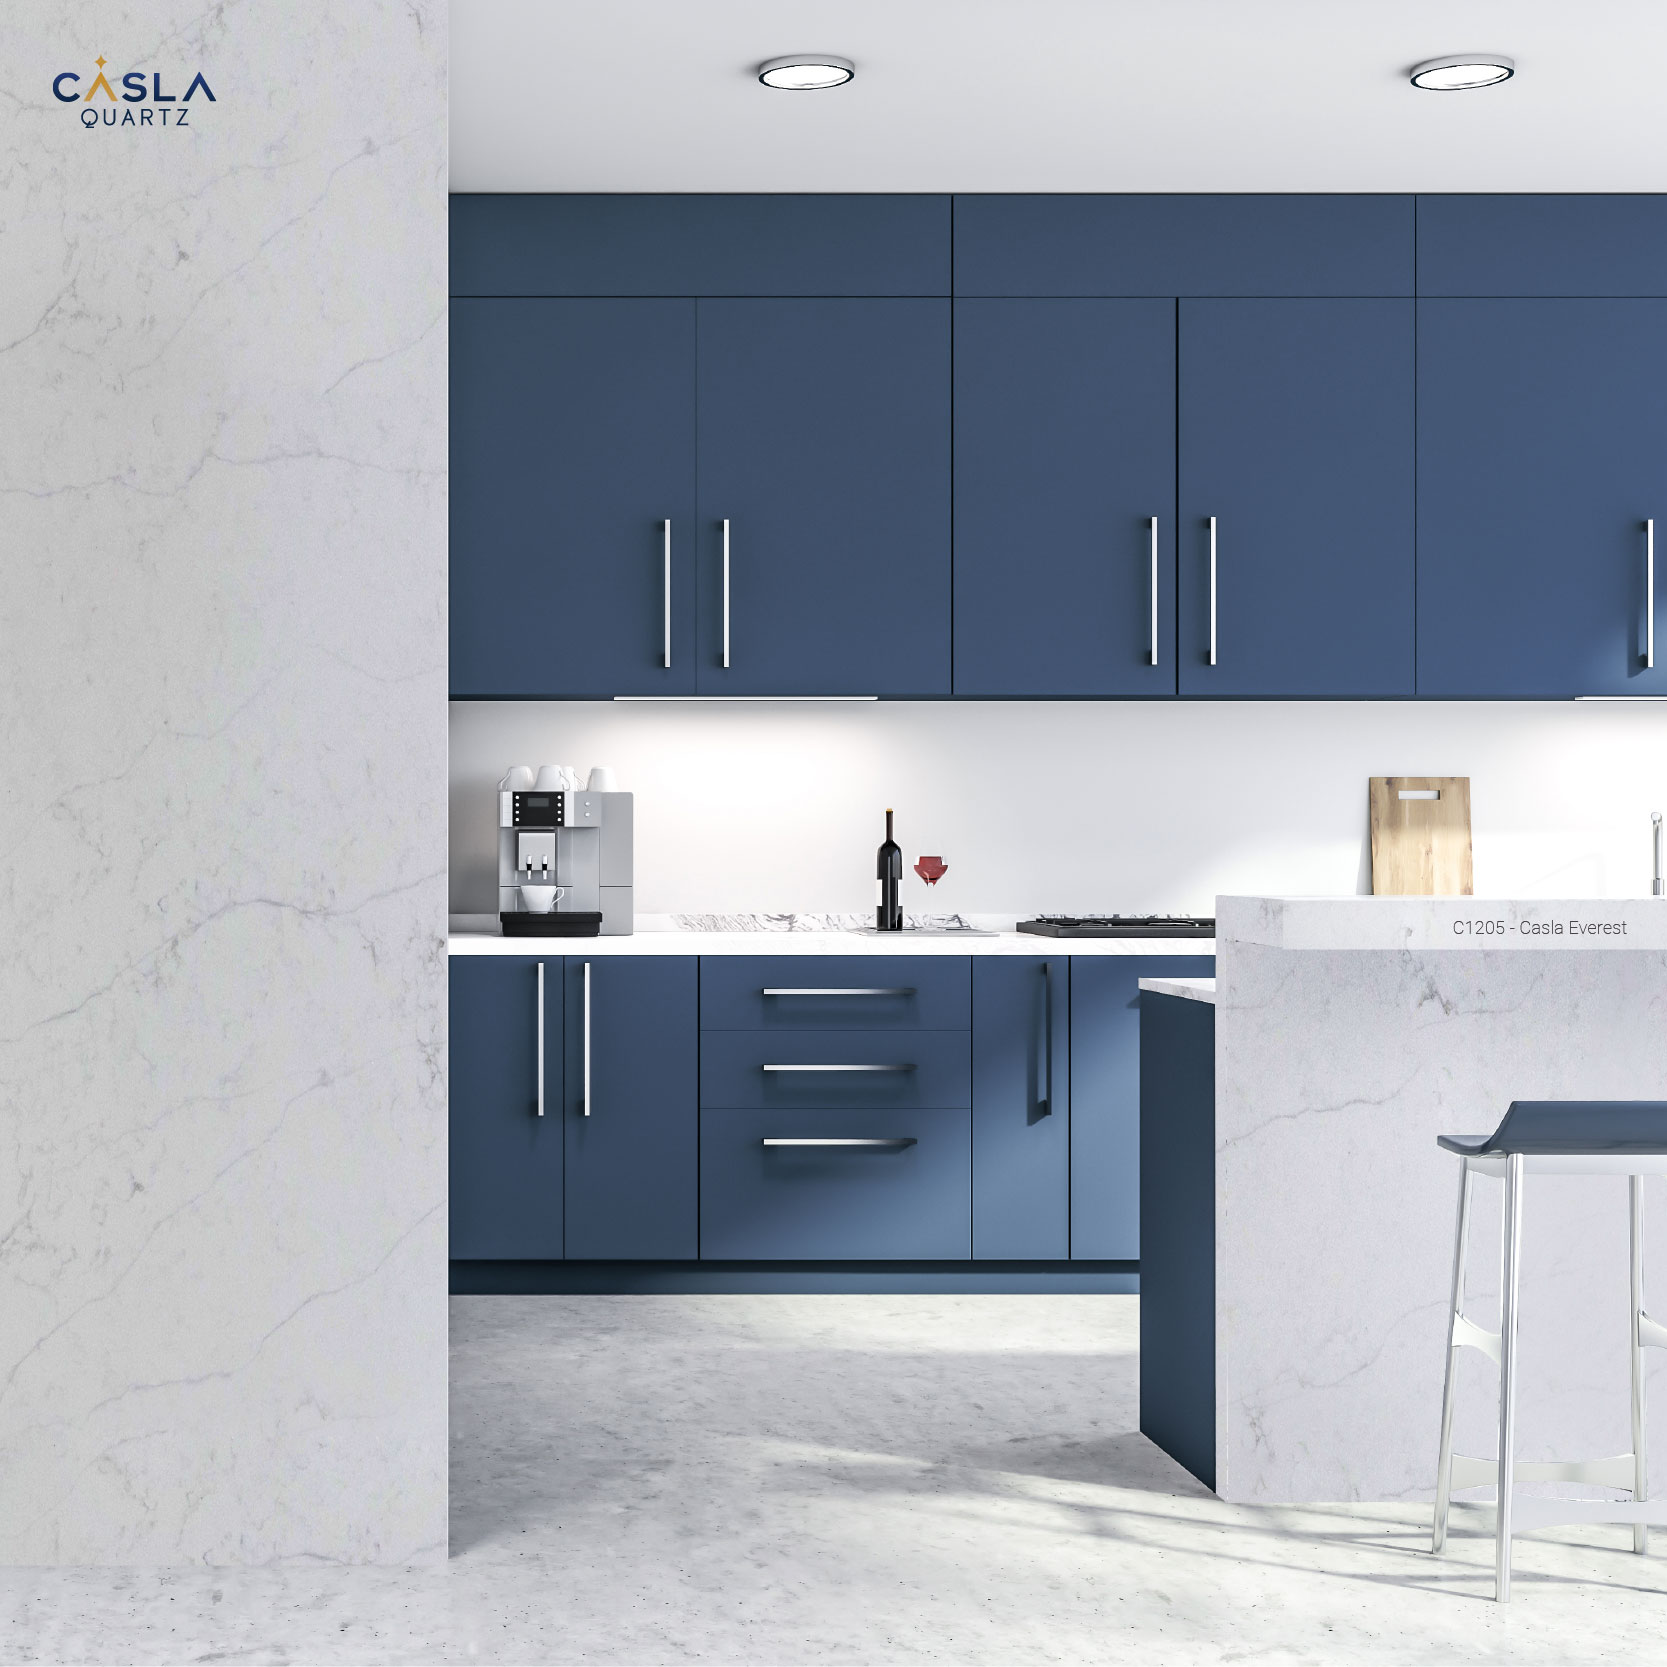 Khi trang trí nhà bếp với đá nhân tạo ốp tường, bàn và đảo bếp đồng bộ kết hợp với màu xanh cổ vịt gợi cảm giác trẻ trung, mới mẻ.